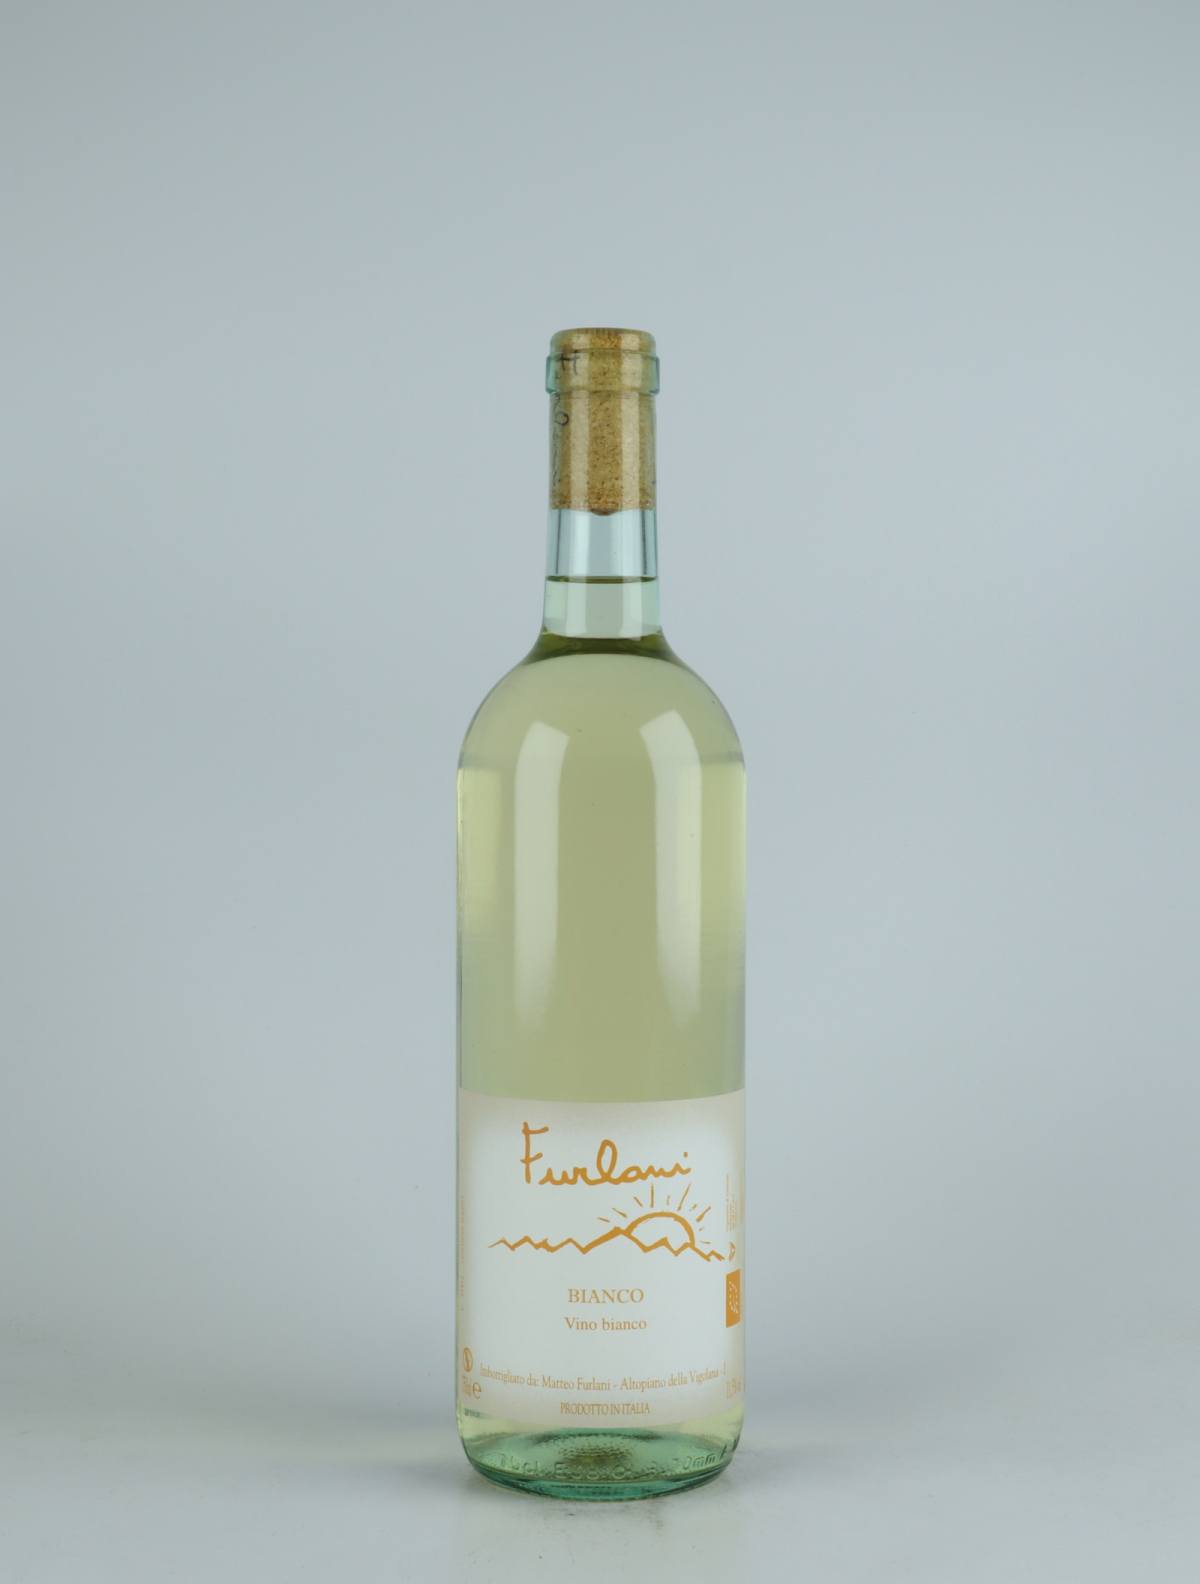 En flaske 2020 Bianco Hvidvin fra Cantina Furlani, Alto Adige i Italien